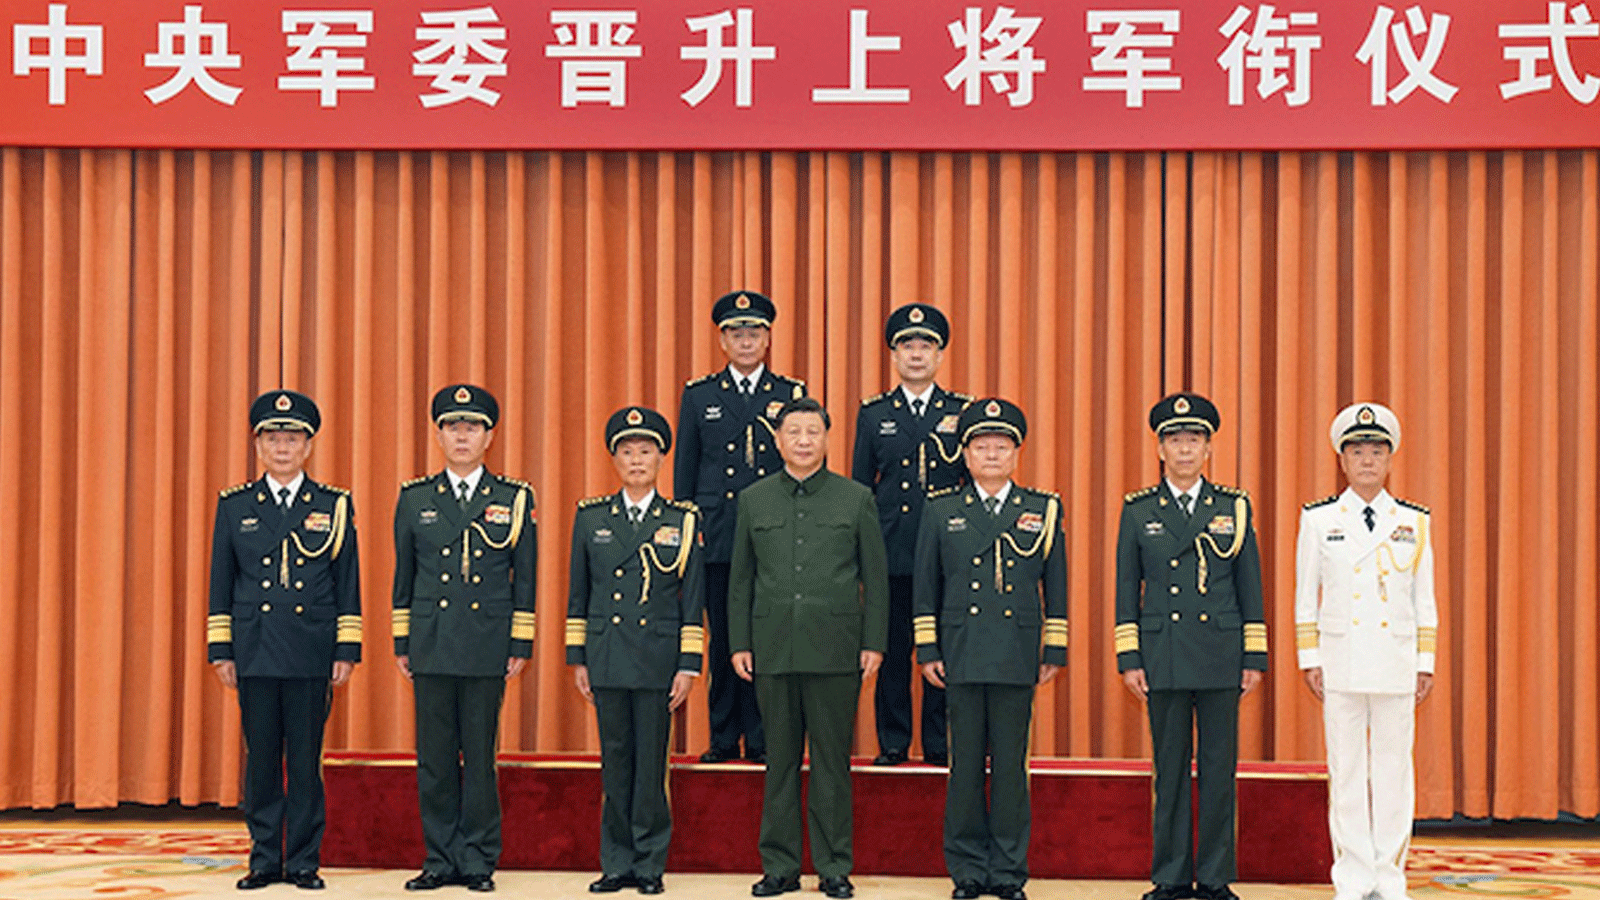 الرئيس الصيني شي جينبينغ، بصفته رئيسًا للجنة العسكرية المركزية، قدم يوم الاثنين شهادات ترتيب لترقية قائد القوة الصاروخية وانغ هوبين والمفوض السياسي شو شي شنغ إلى رتبة جنرال